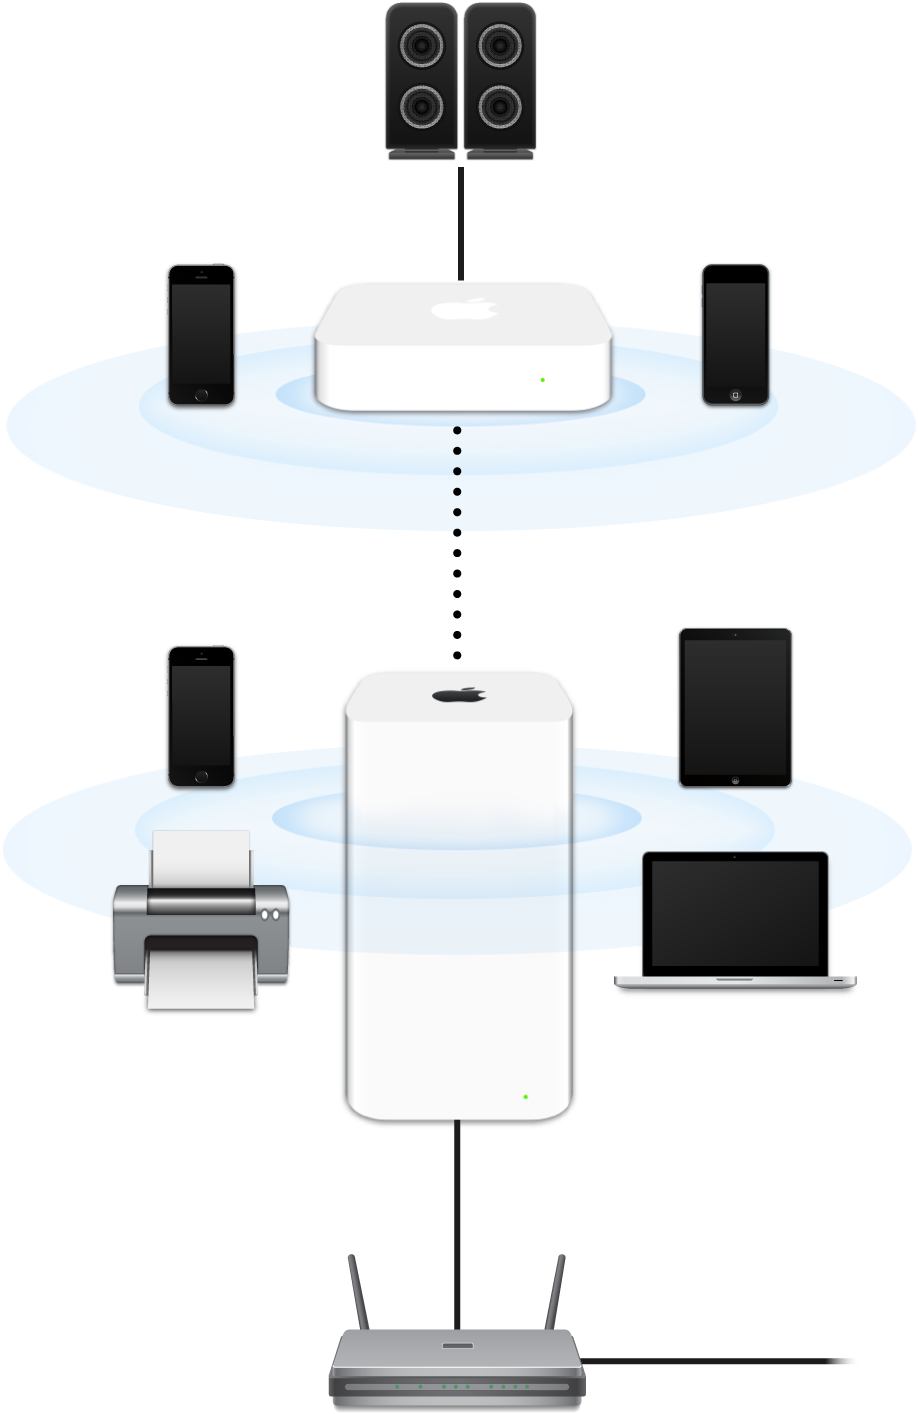 Una red ampliada, incluye una AirPort Extreme y una AirPort Express, conectada a un módem y transmitiendo a diferentes dispositivos.